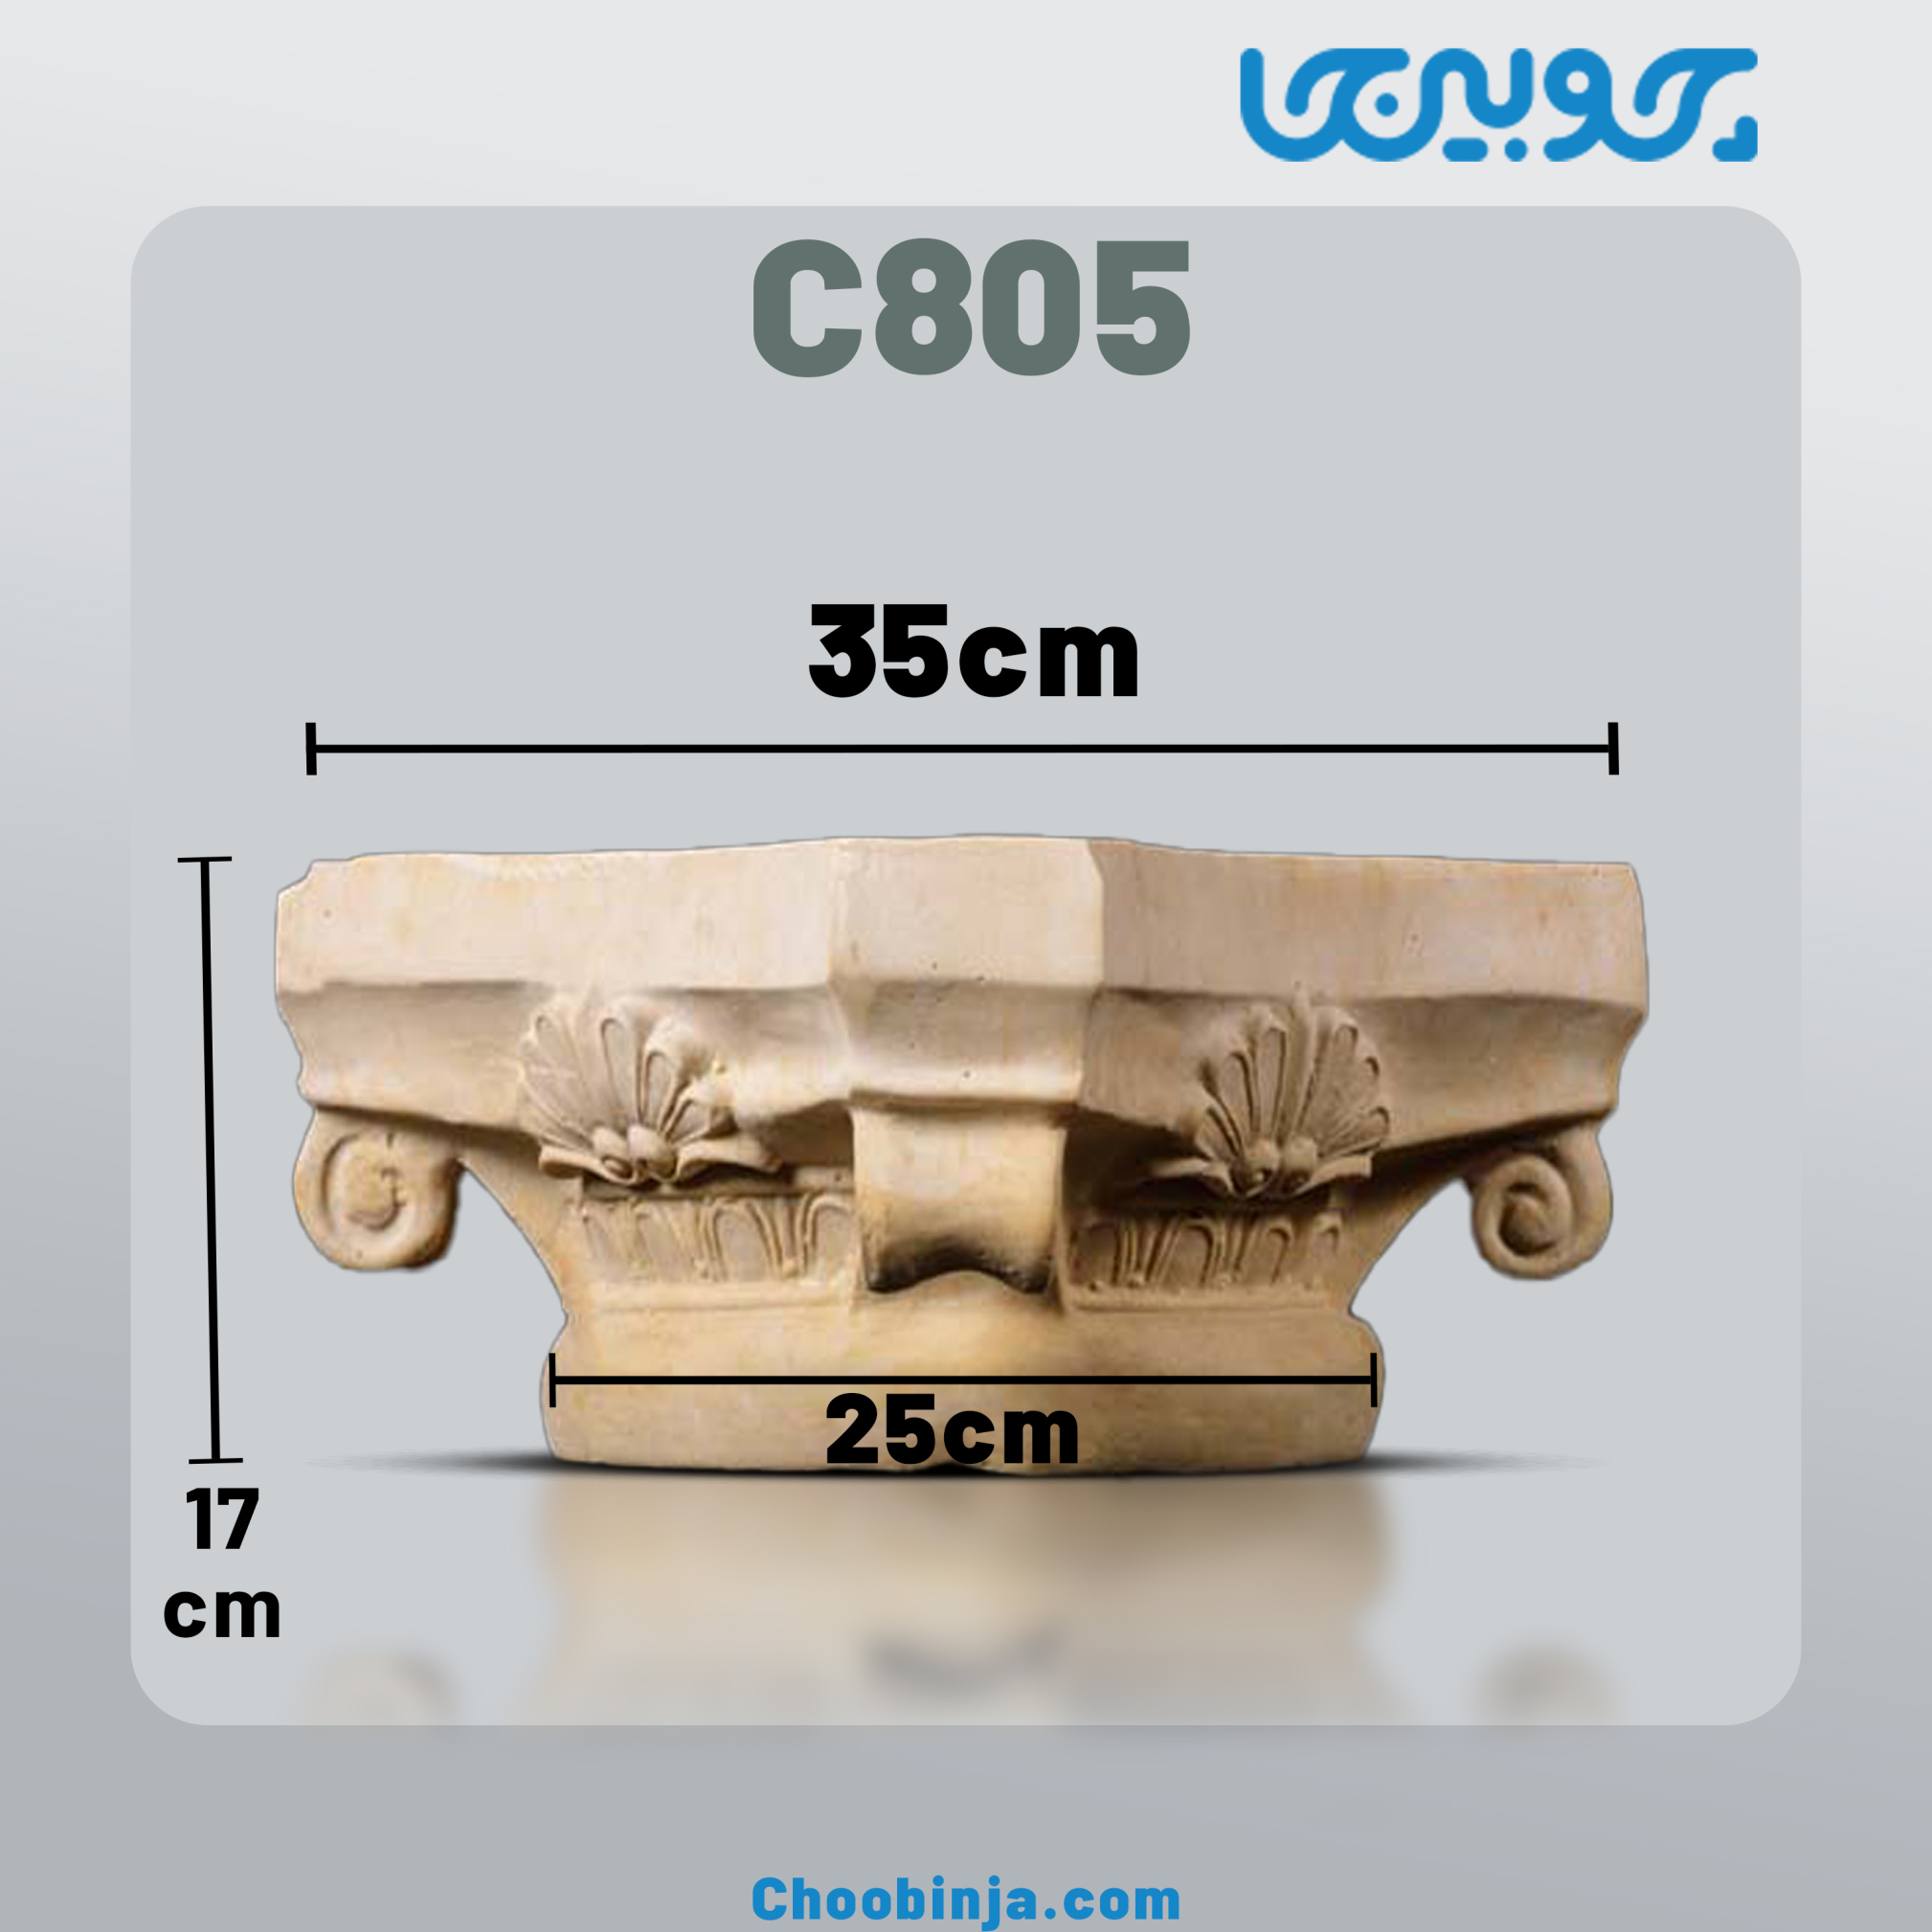  سرستون نمای ساختمان جنس رزین کد C805 